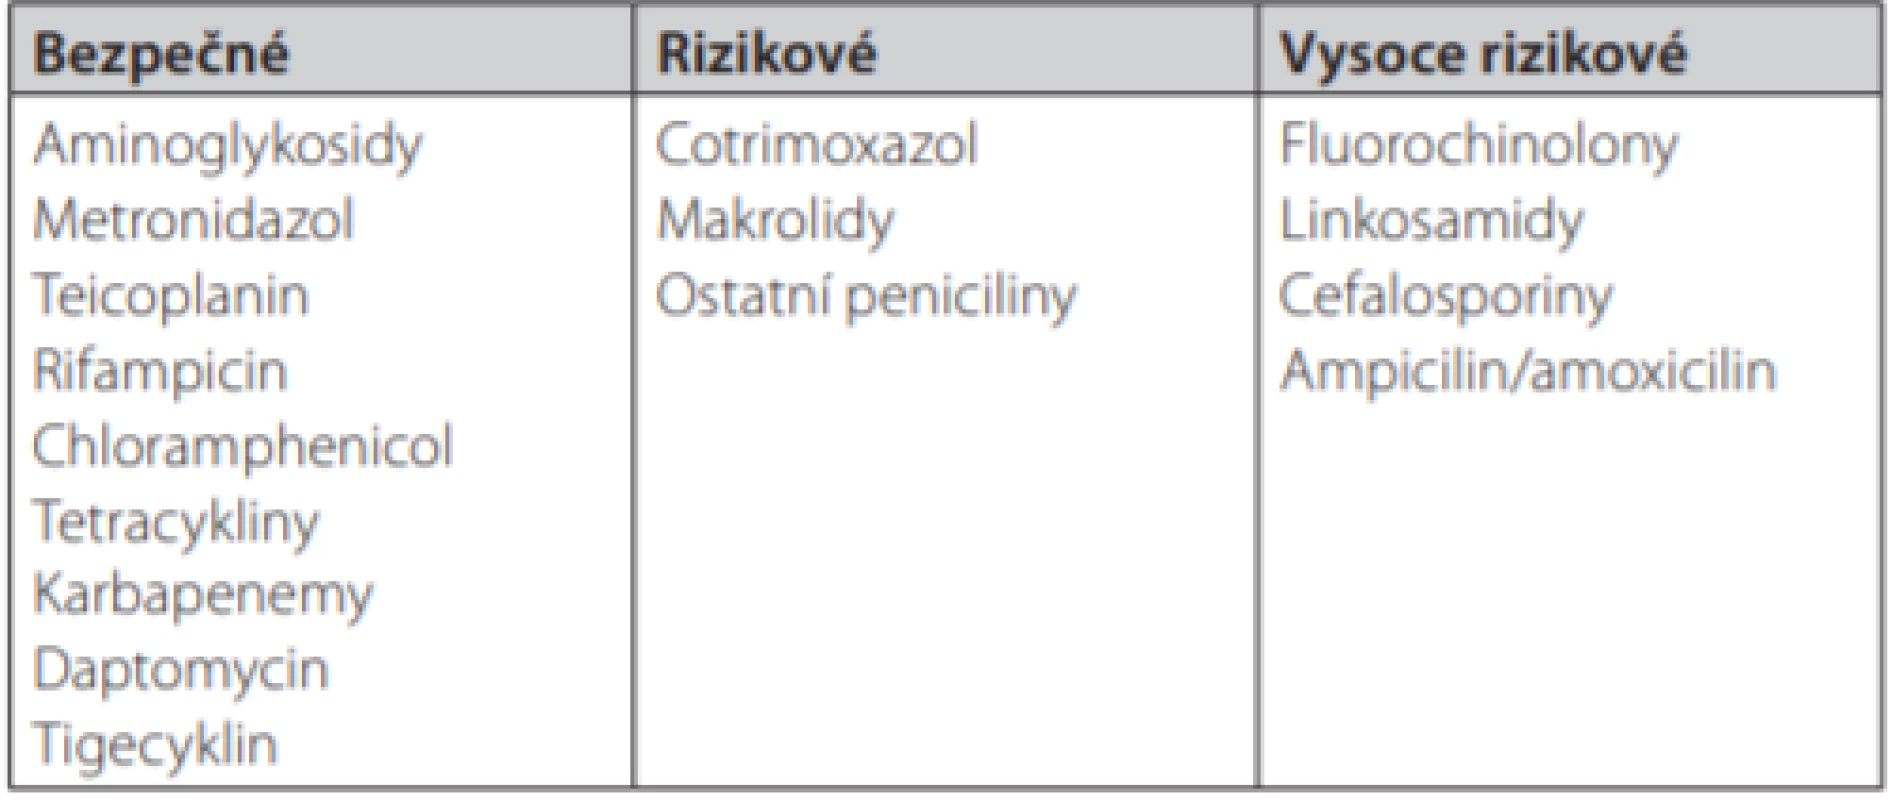 Přehled antibiotik rizikových z indukce klostridiové kolitidy.
Upraveno podle (5)